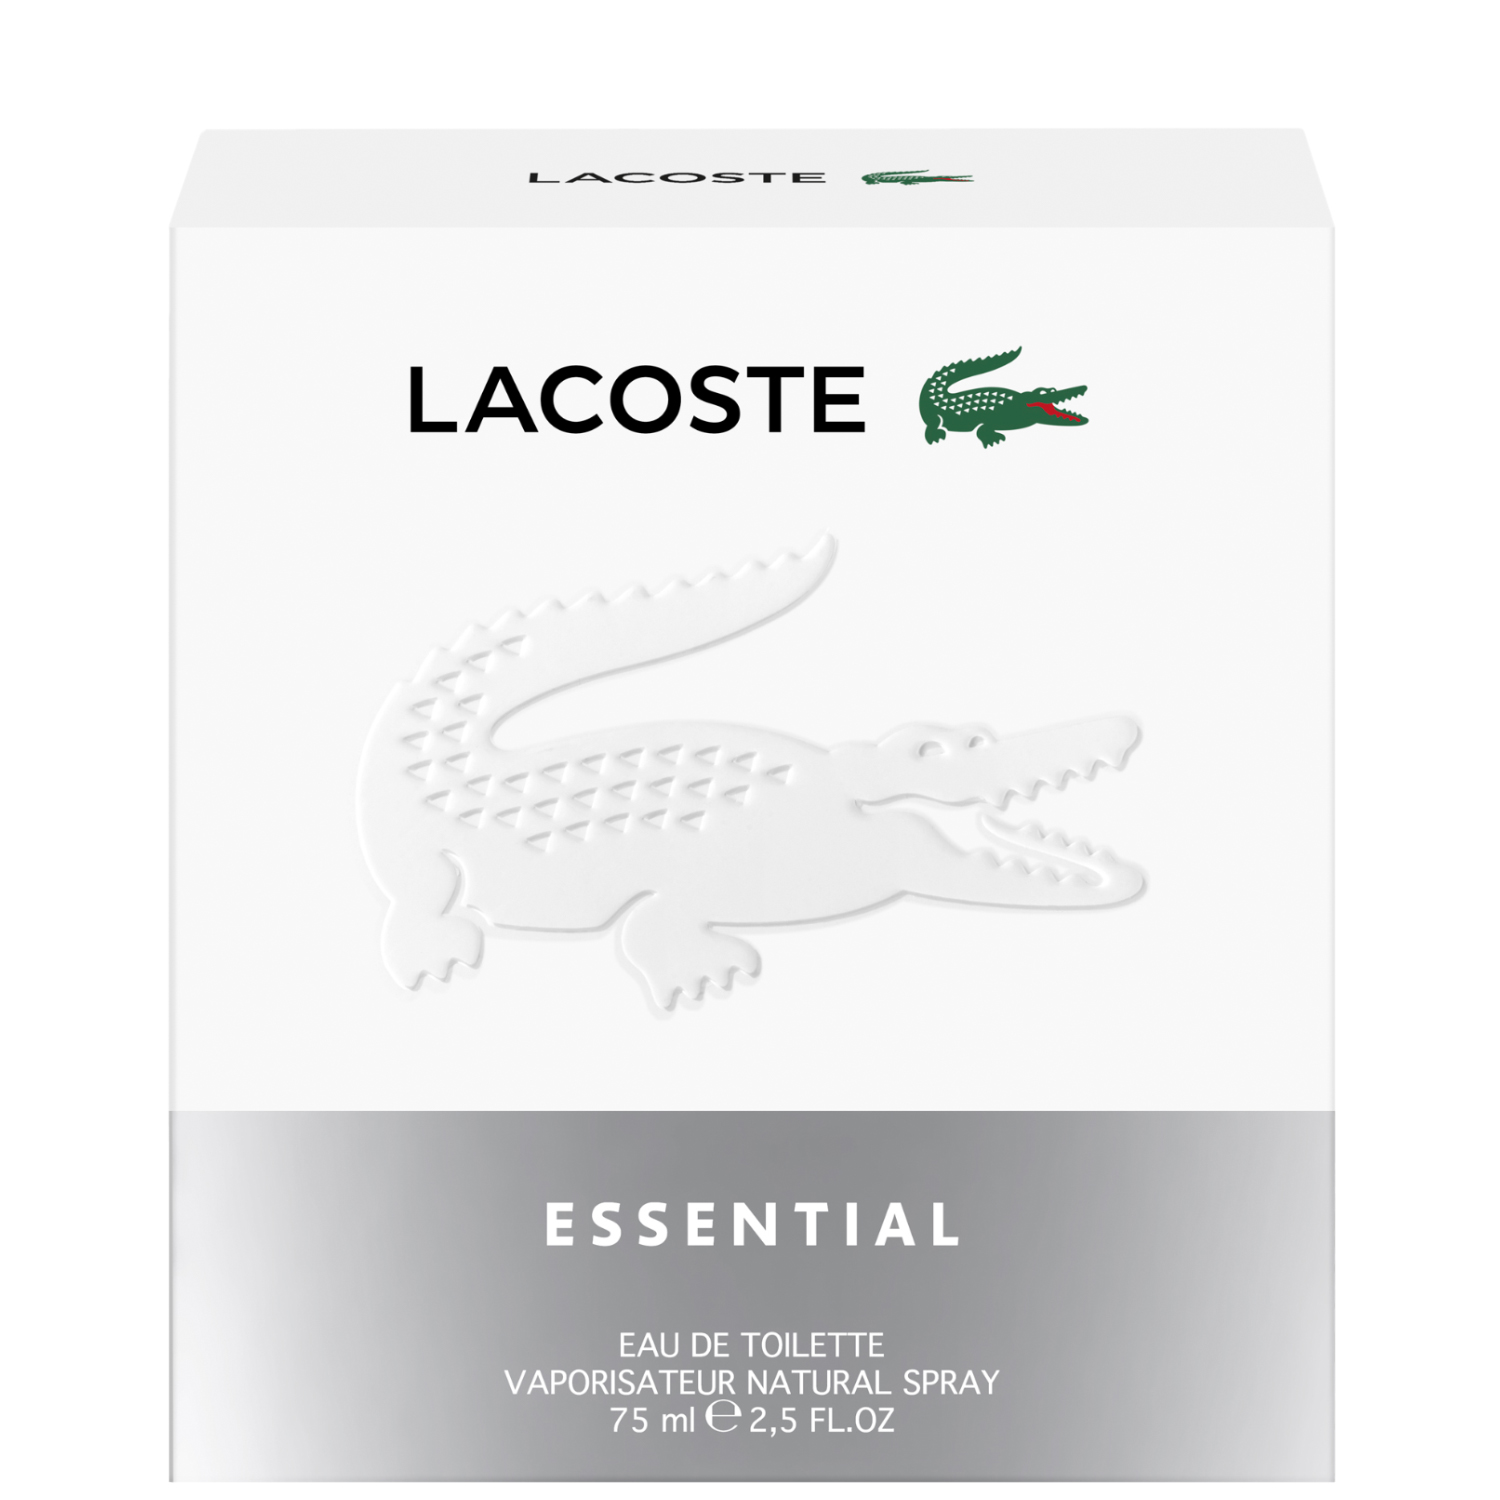 Lacoste Essential Eau de Toilette 75ml